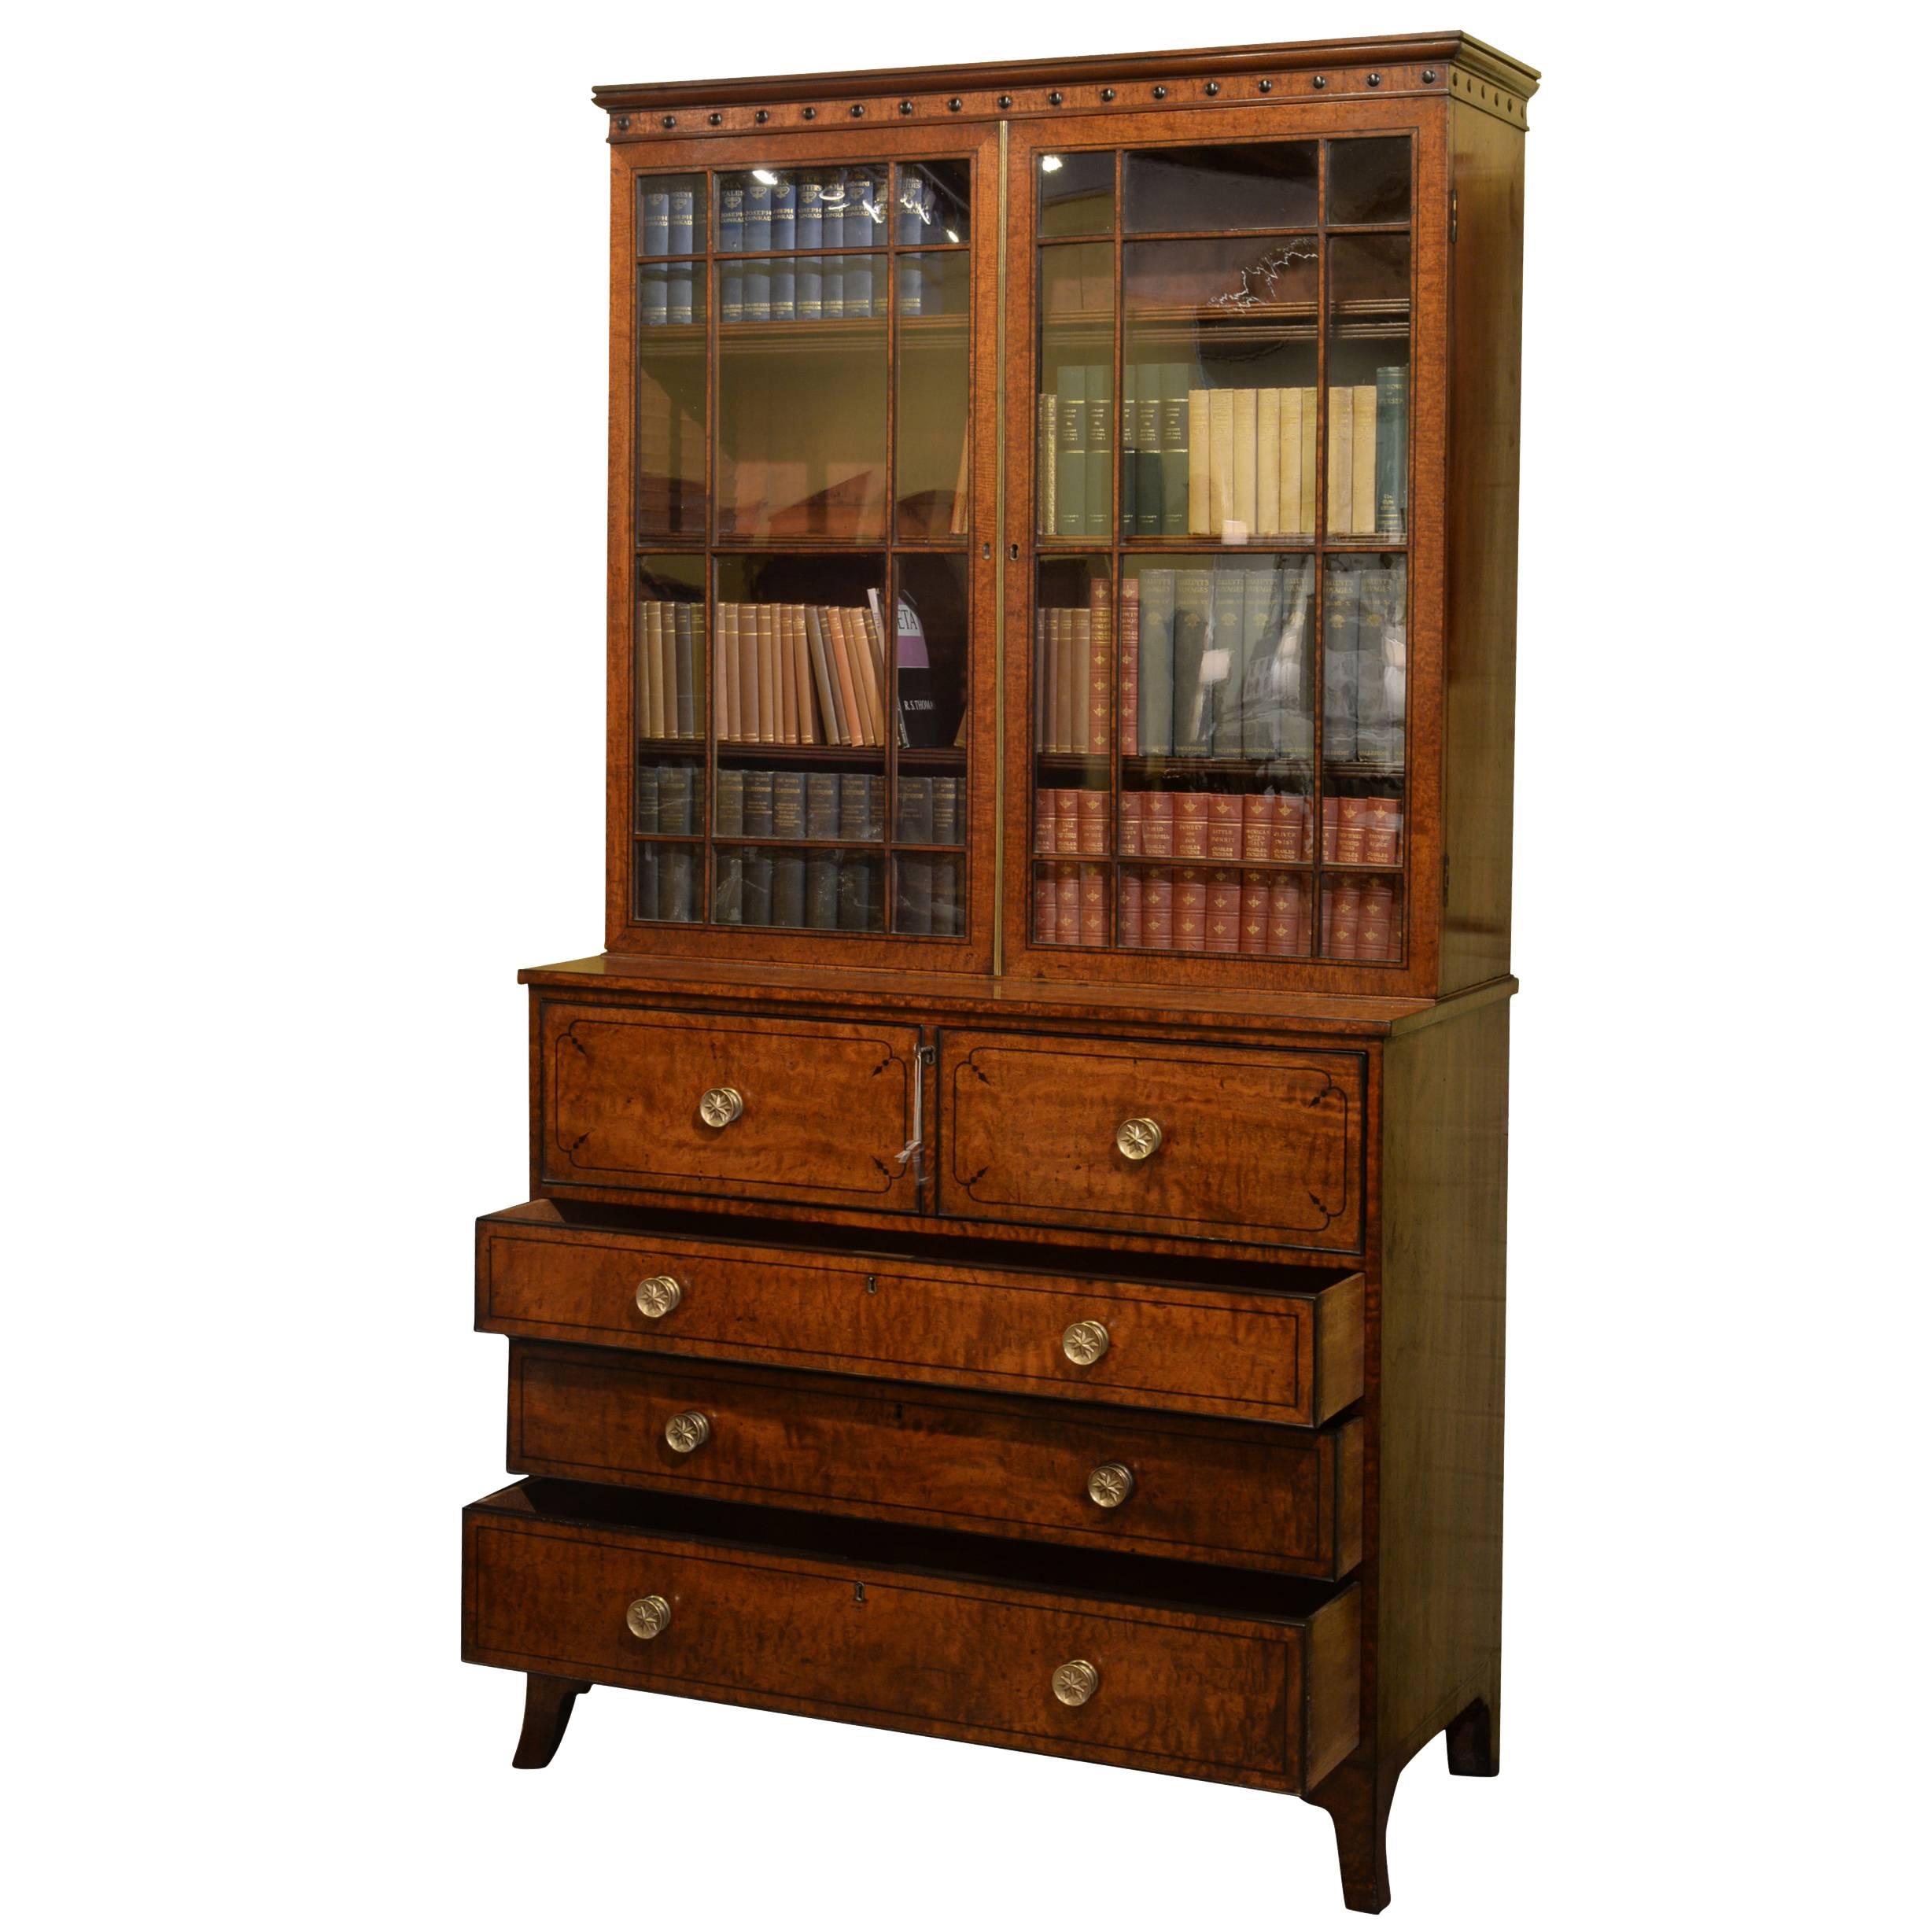 English Regency Mahogany Secretaire Bookcase